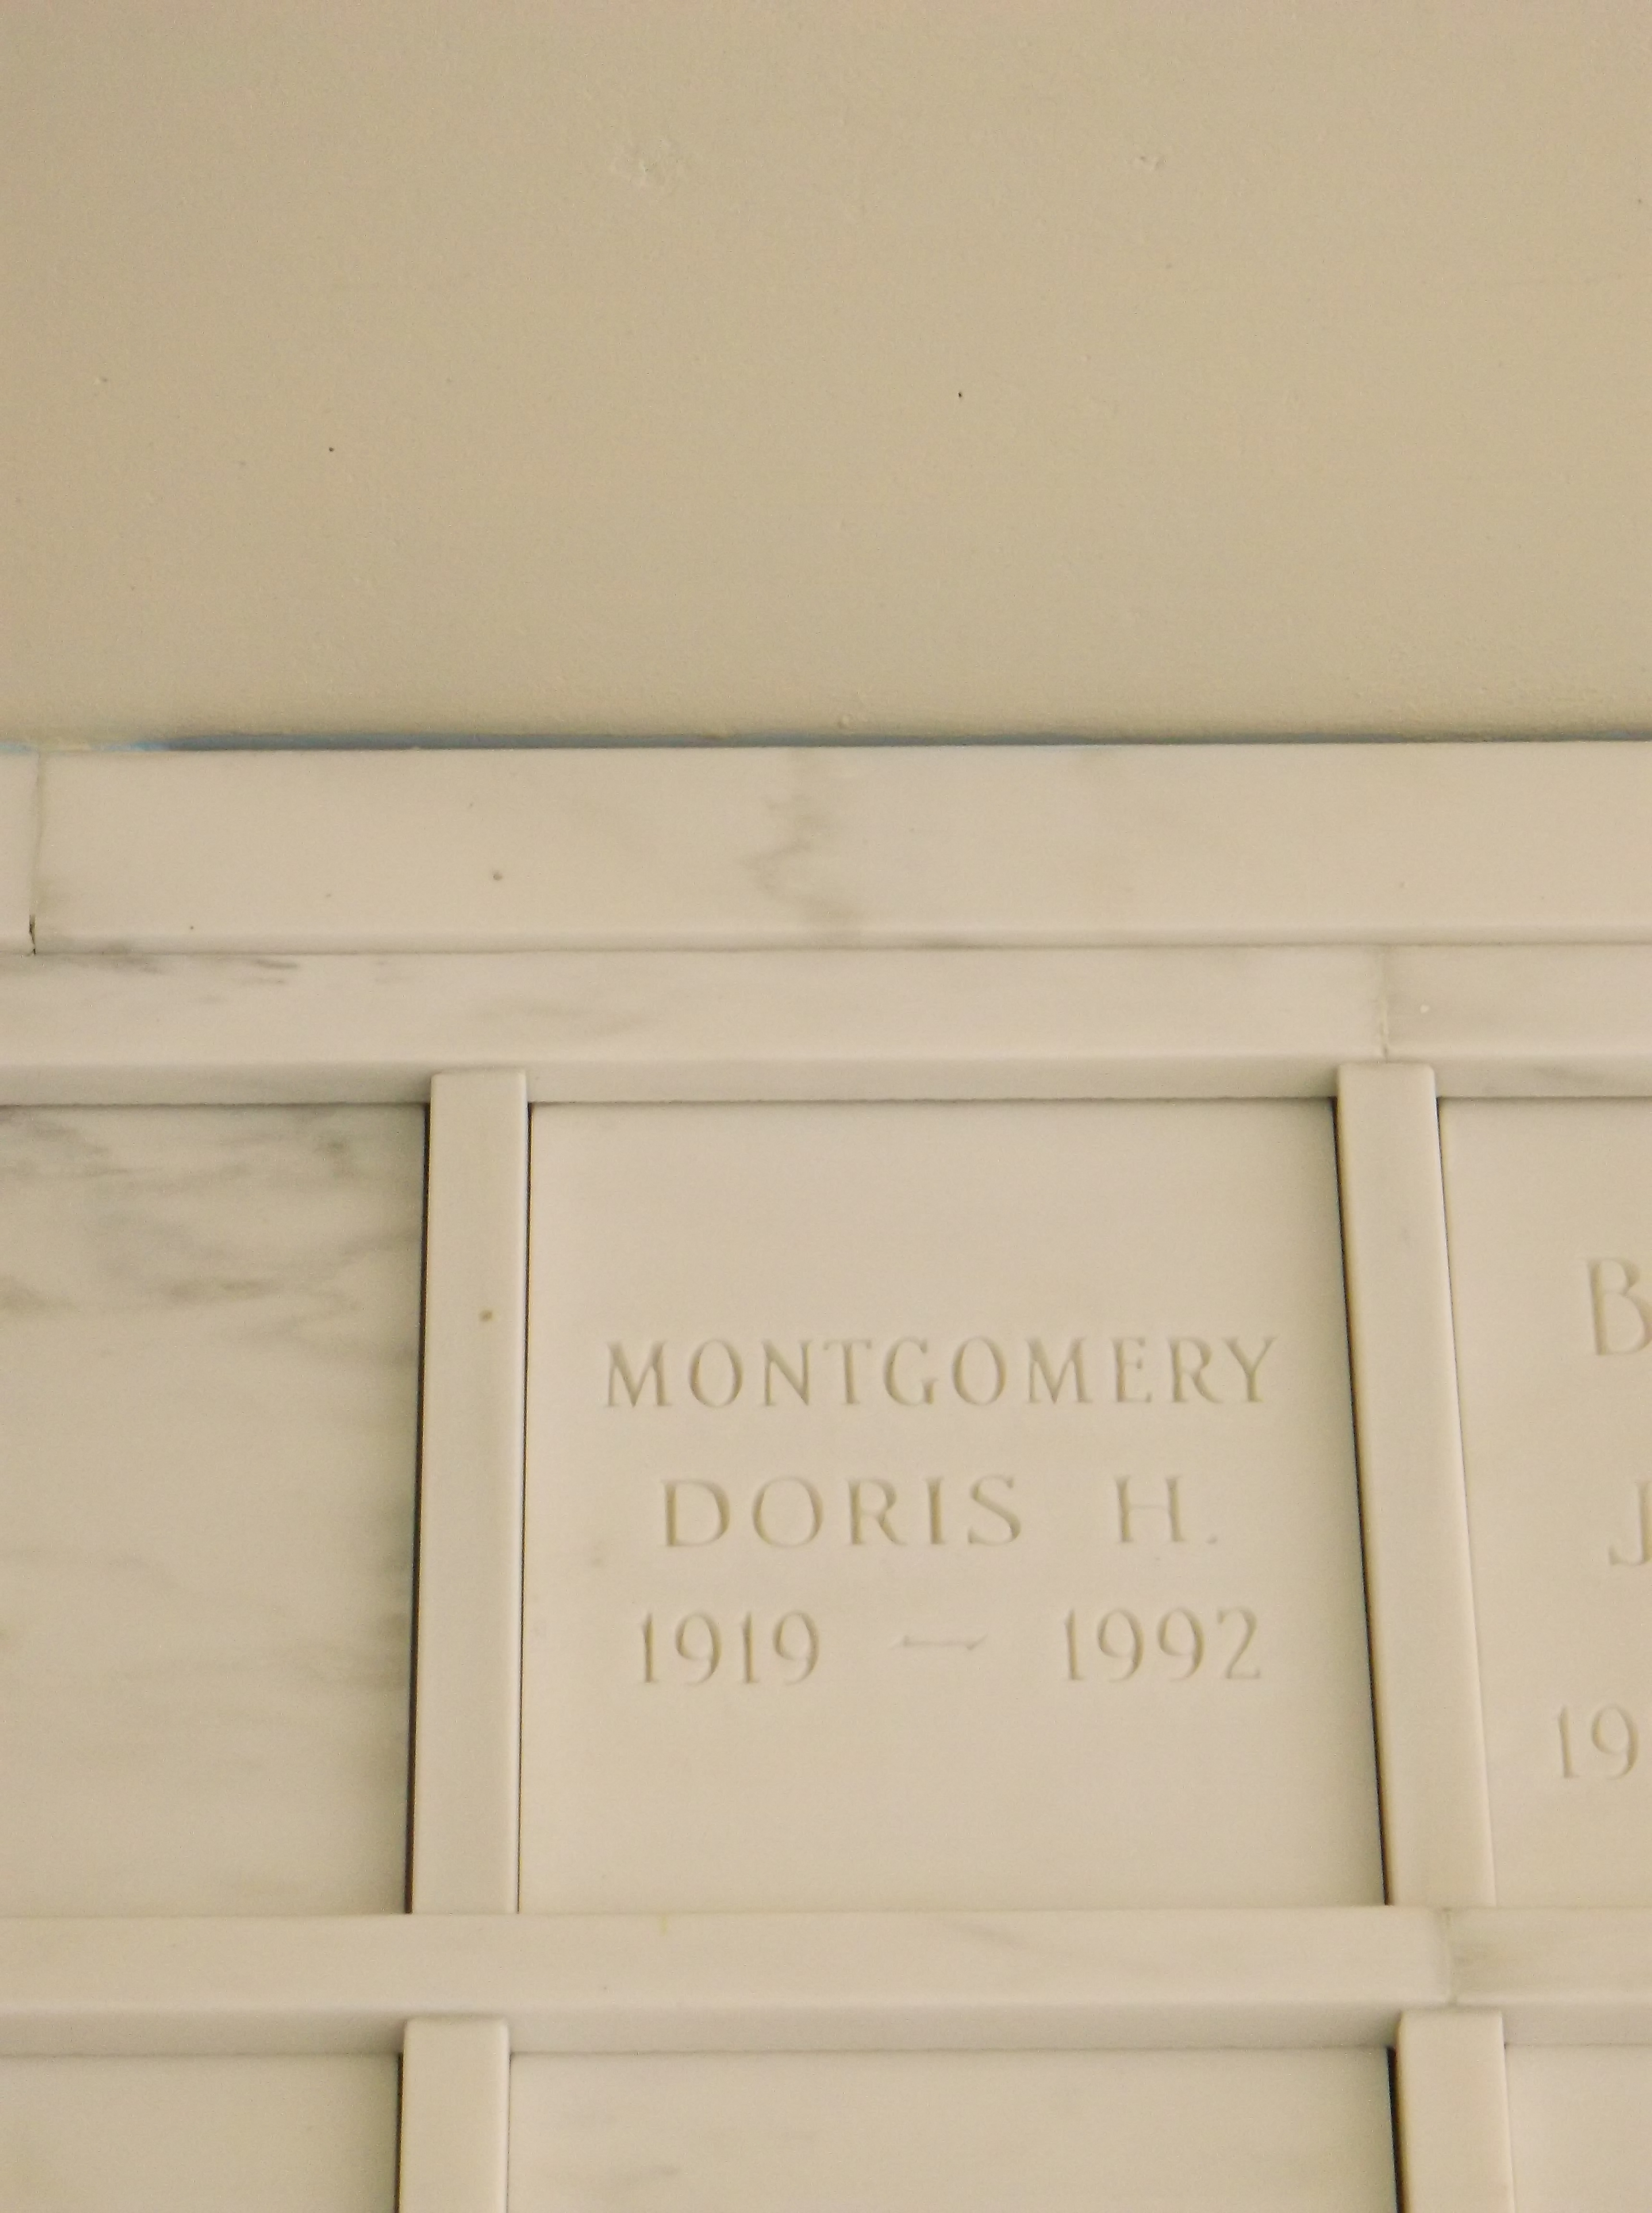 Doris H Montgomery